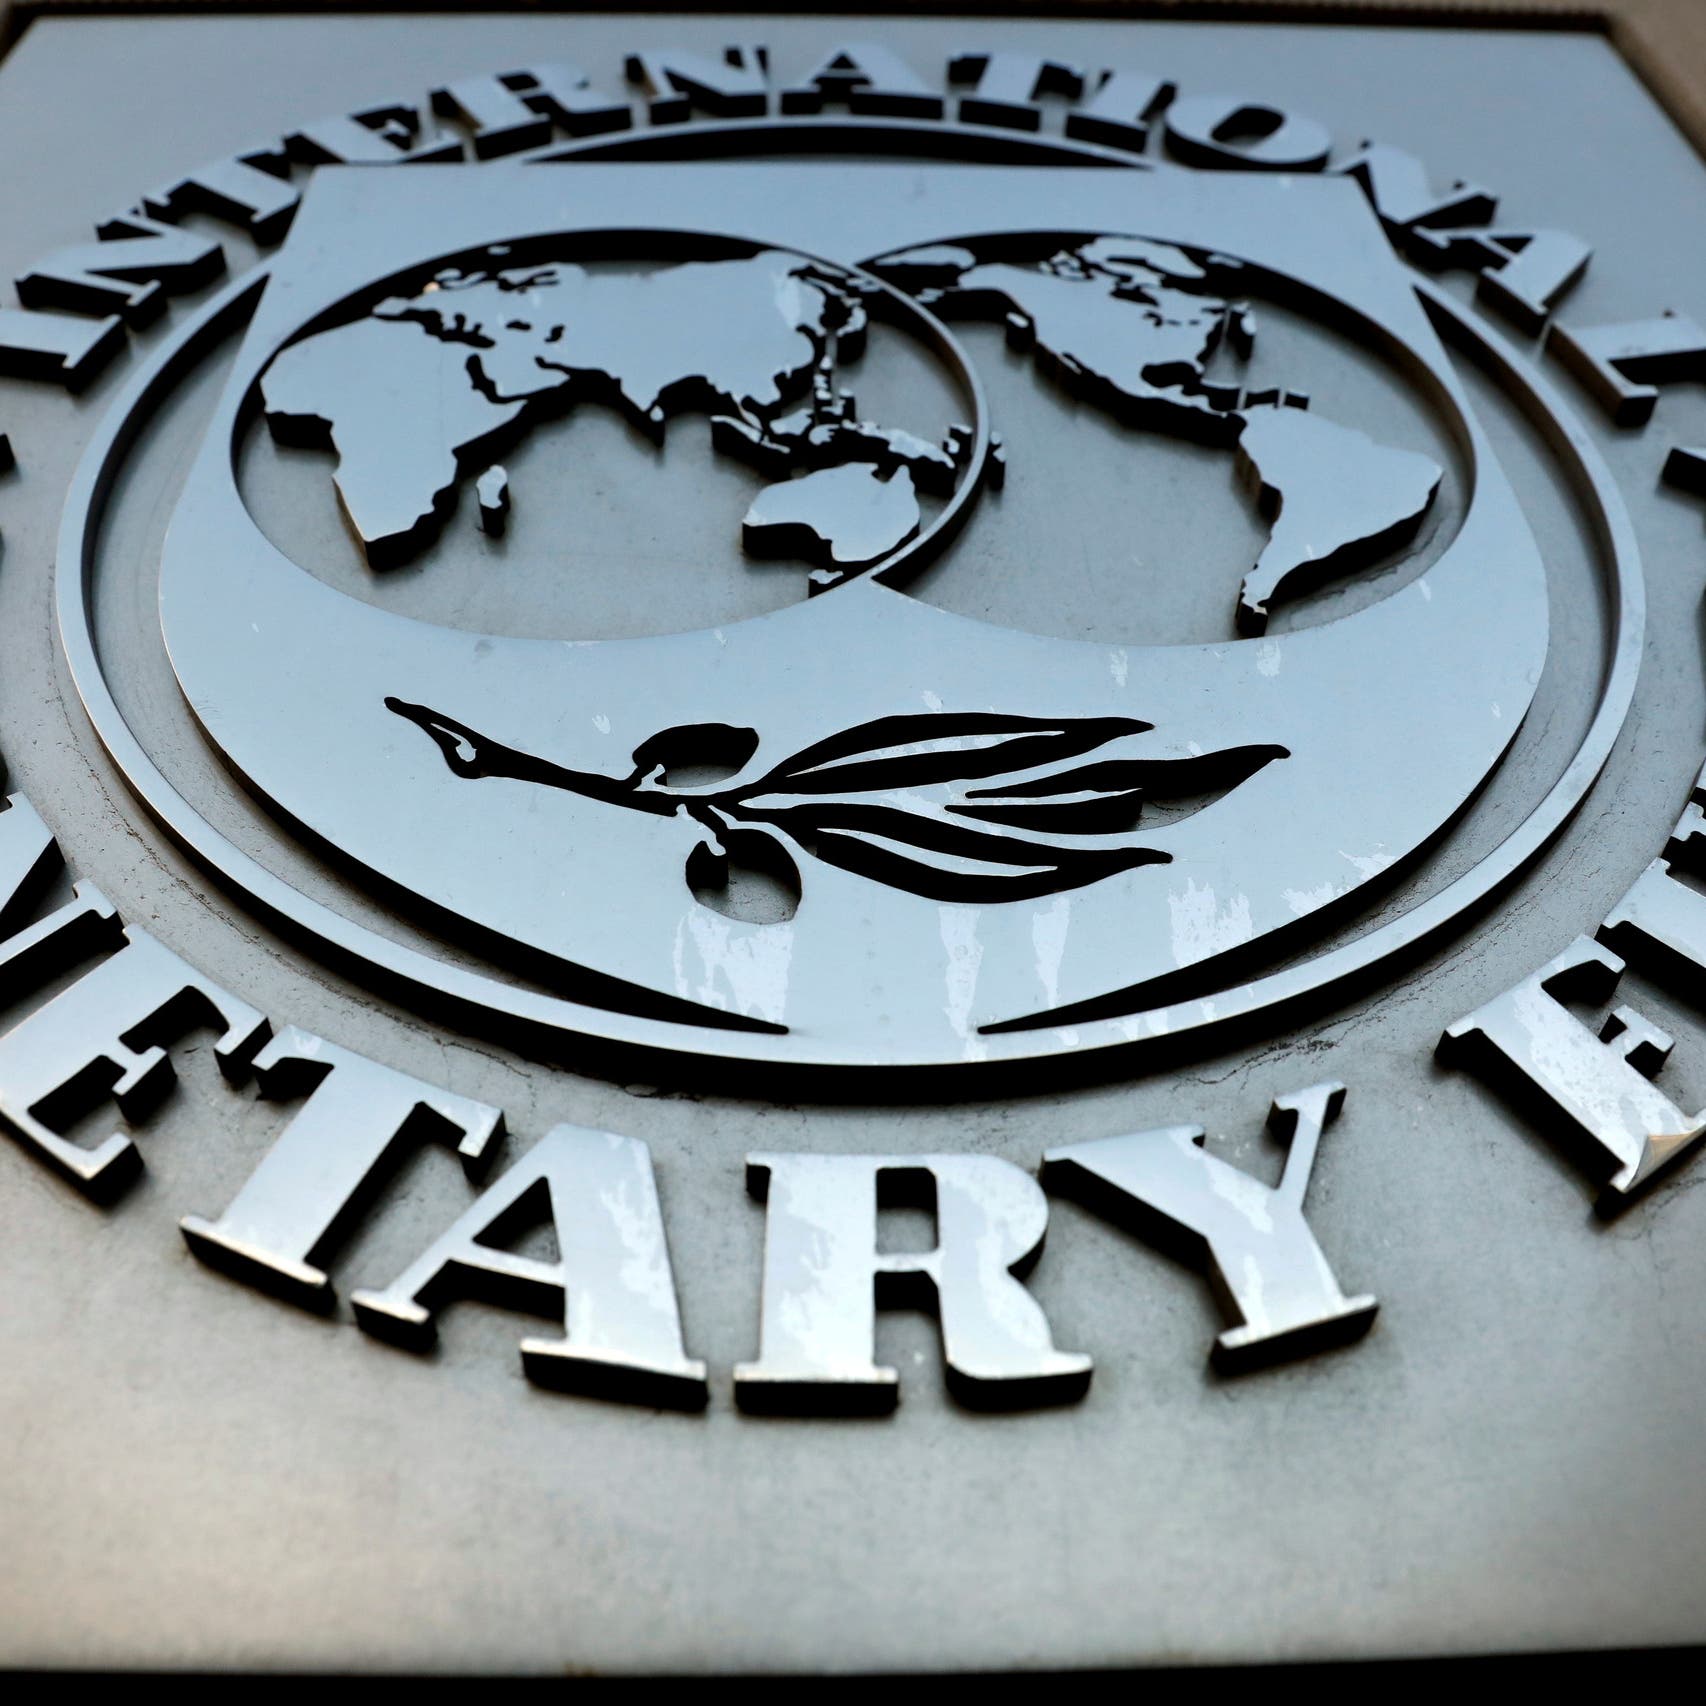 صندوق النقد يتوقع انتعاشا طفيفا للنمو في أفريقيا في 2021 و2022